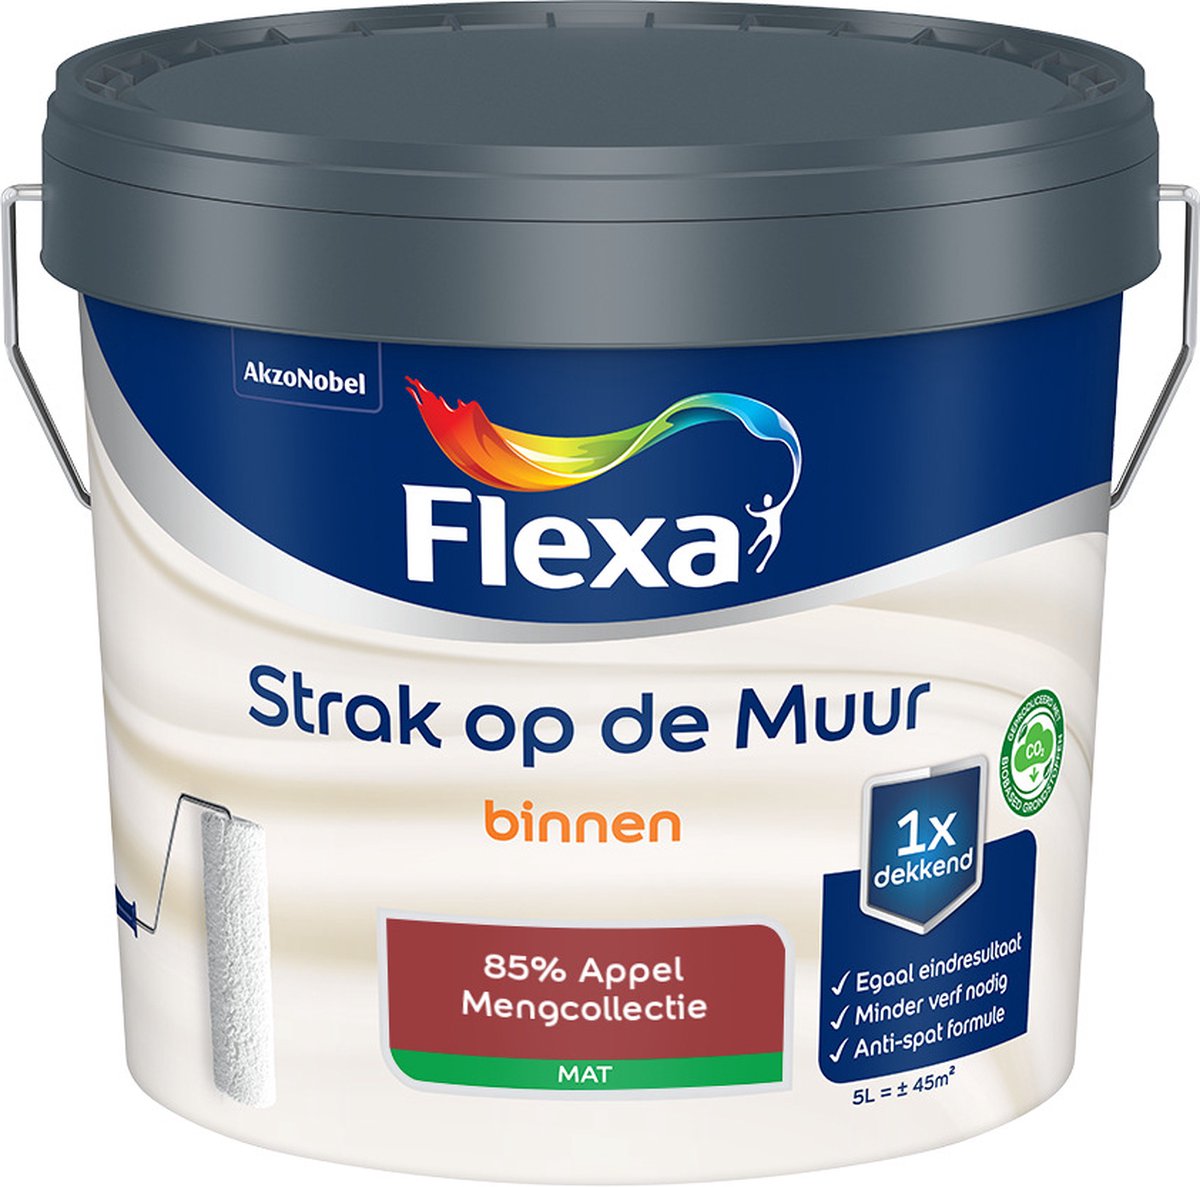 Flexa Strak op de muur - Muurverf - Mengcollectie - 85% Appel - 5 Liter